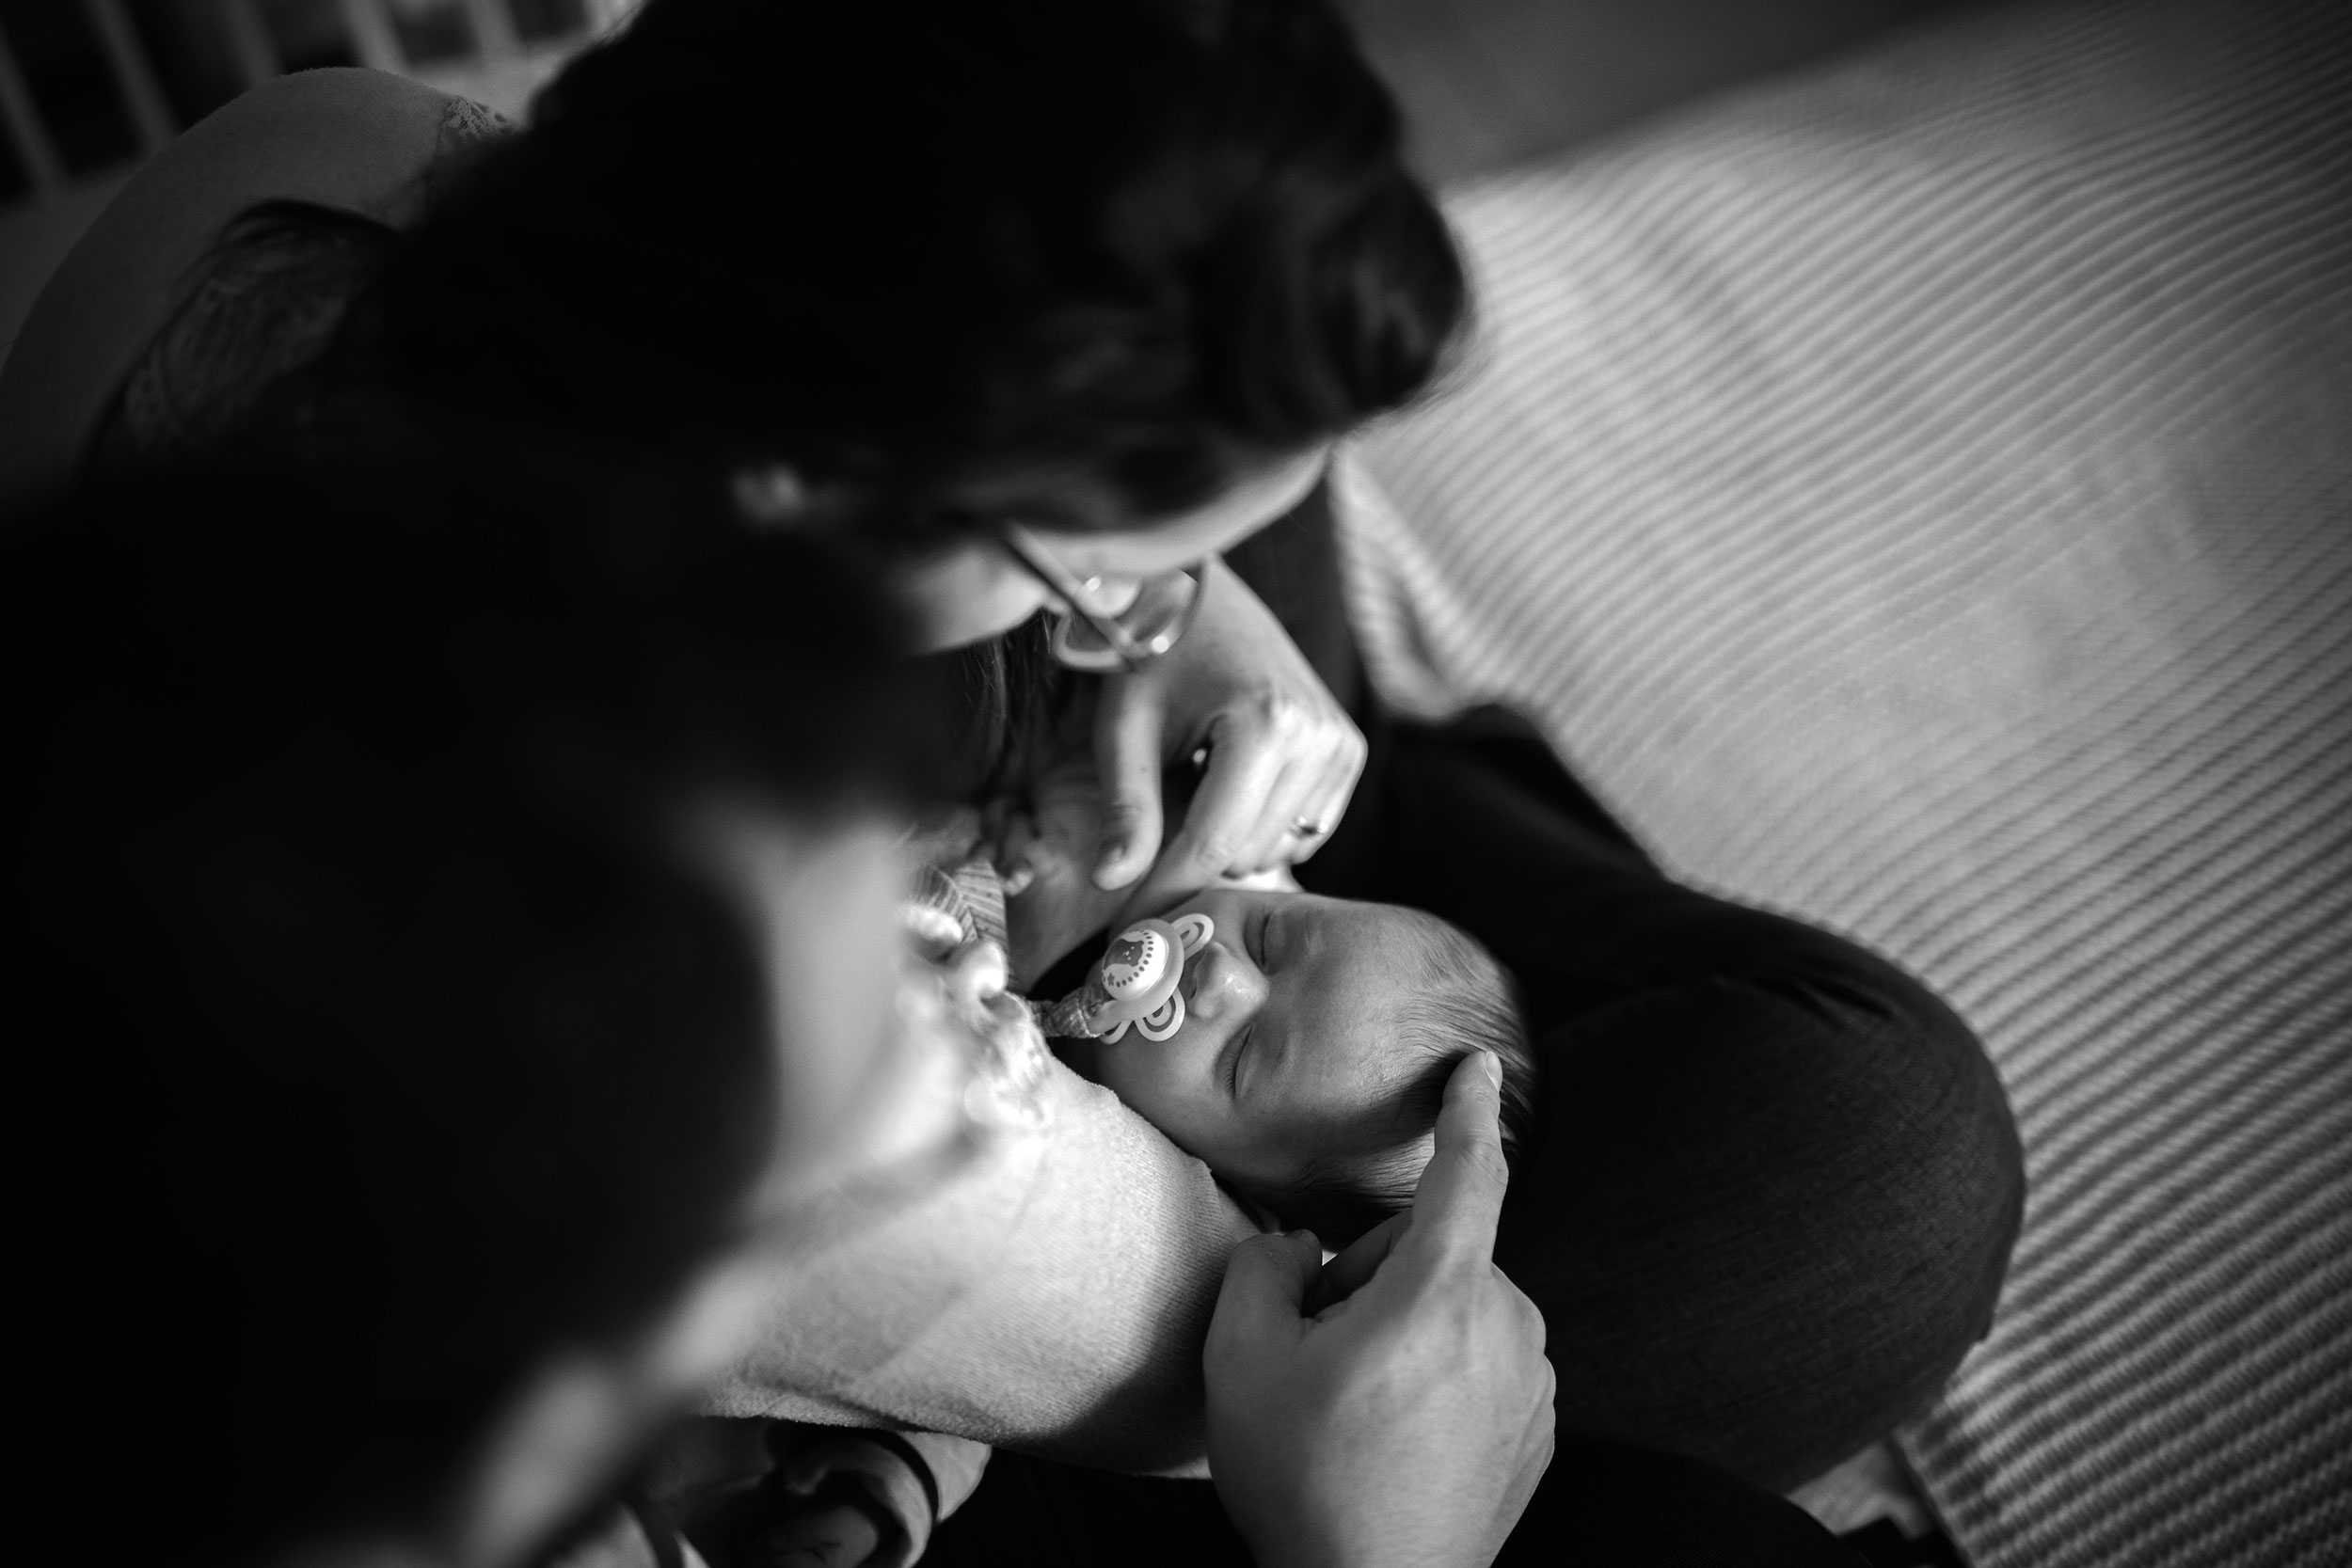 séance photo famille avec bébé 1 mois noir et blanc